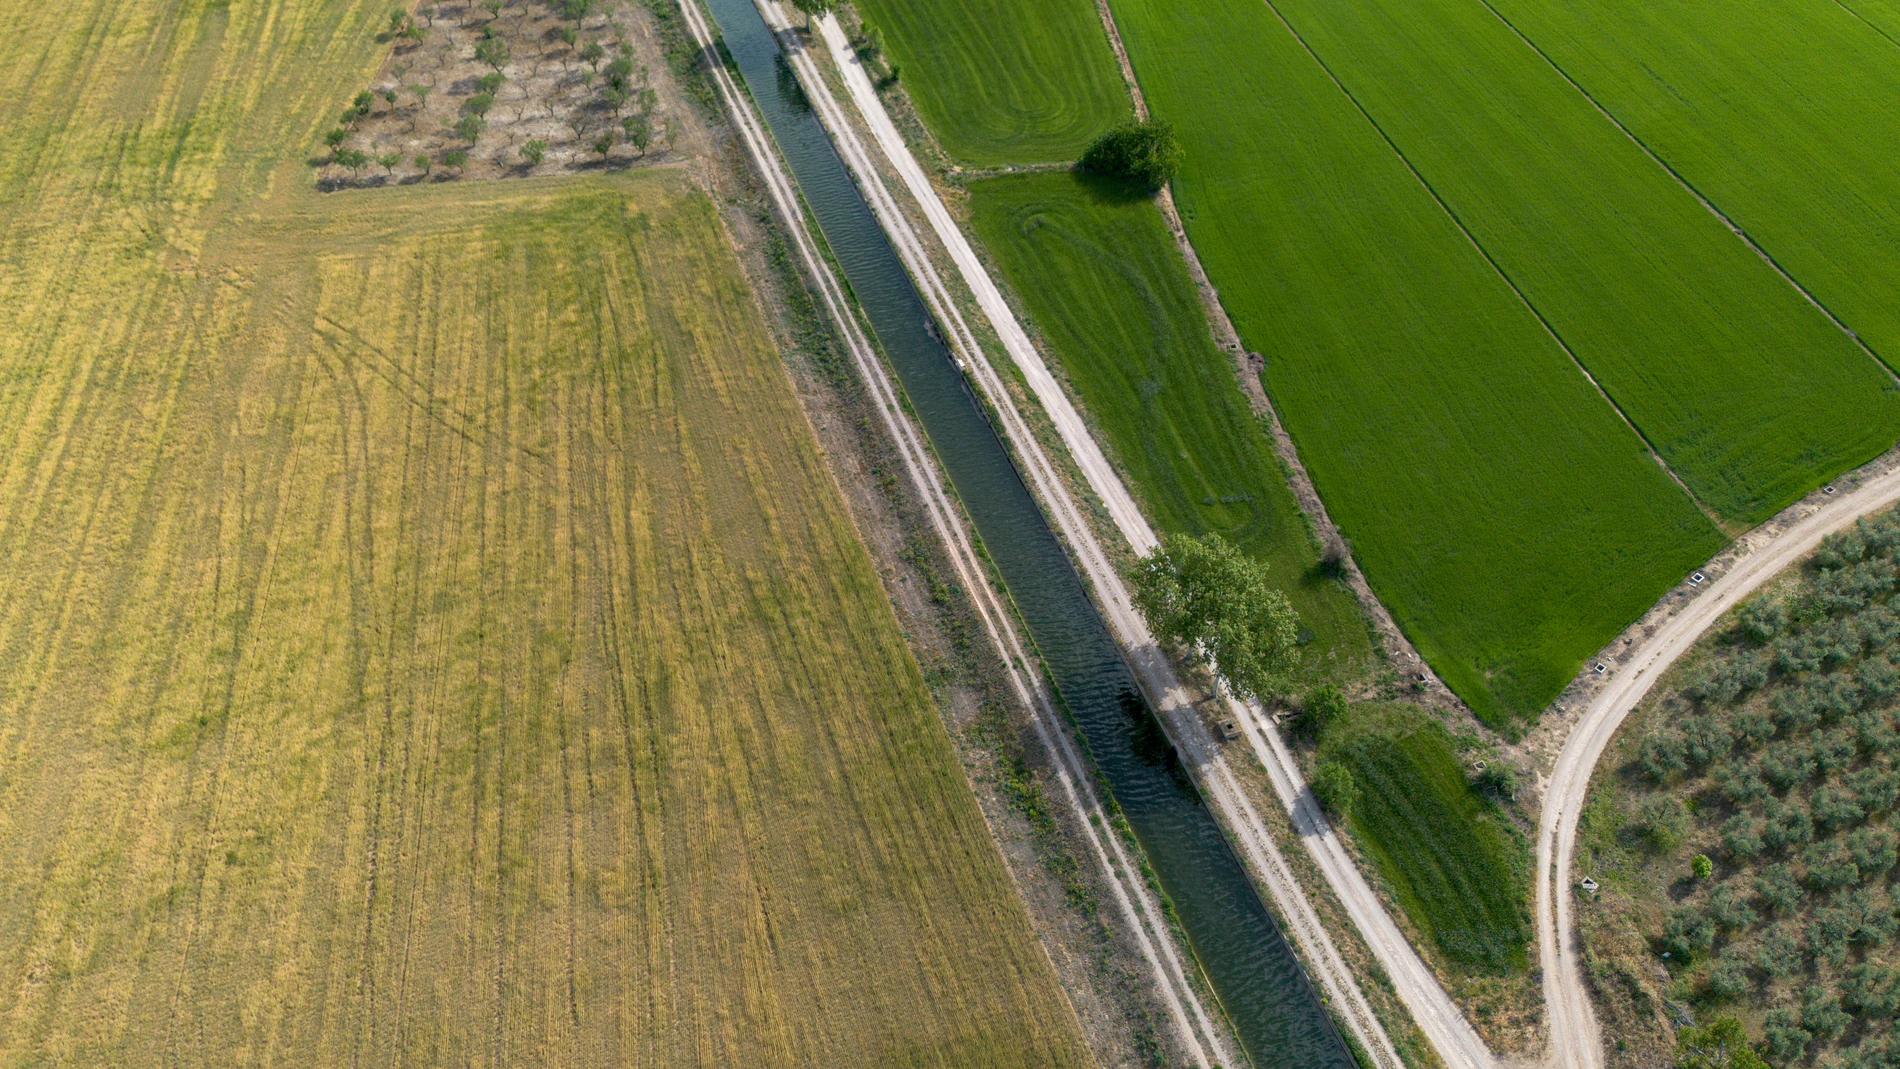 Vista del Canal d'Urgell, a 28 de abril de 2023, en Anglesola, Lleida, Catalunya (España). Ha cerrado el Canal d’Urgell para el uso agrario a causa de la bajada de caudal provocada por la sequía. Es la primera vez que esta infraestructura se cierra en 160 años. Sólo hay 12 metros cúbicos de agua por segundo y bajará incluso a dos metros cúbicos si no llueve próximamente. El sindicato Unió de Pagesos ha pedido asegurar la alimentación y el agua para la ganadería extensiva, proponiendo un peritaje de la pérdida prevista de la cosecha de cereal, y que se permita el aprovechamiento de pasto para la ganadería extensiva. 28 ABRIL 2023;SEQUÍA;AGUA;GANADERÍA;AGRICULTURA;CEREAL;CULTIVO Lorena Sopêna / Europa Press 28/04/2023